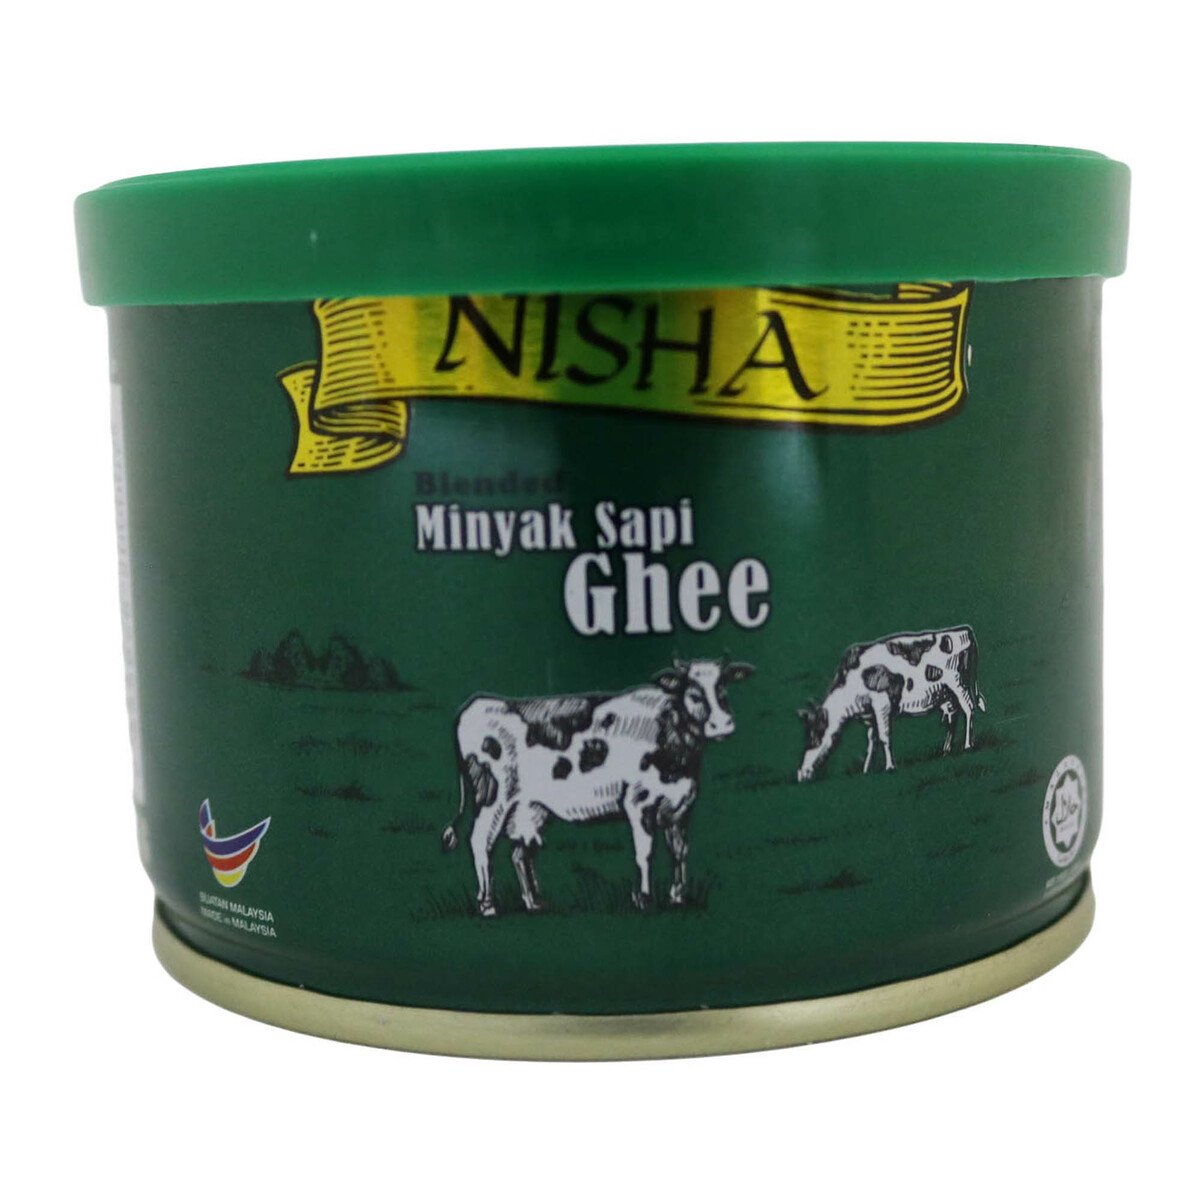 Nisha Blended Ghee 125g